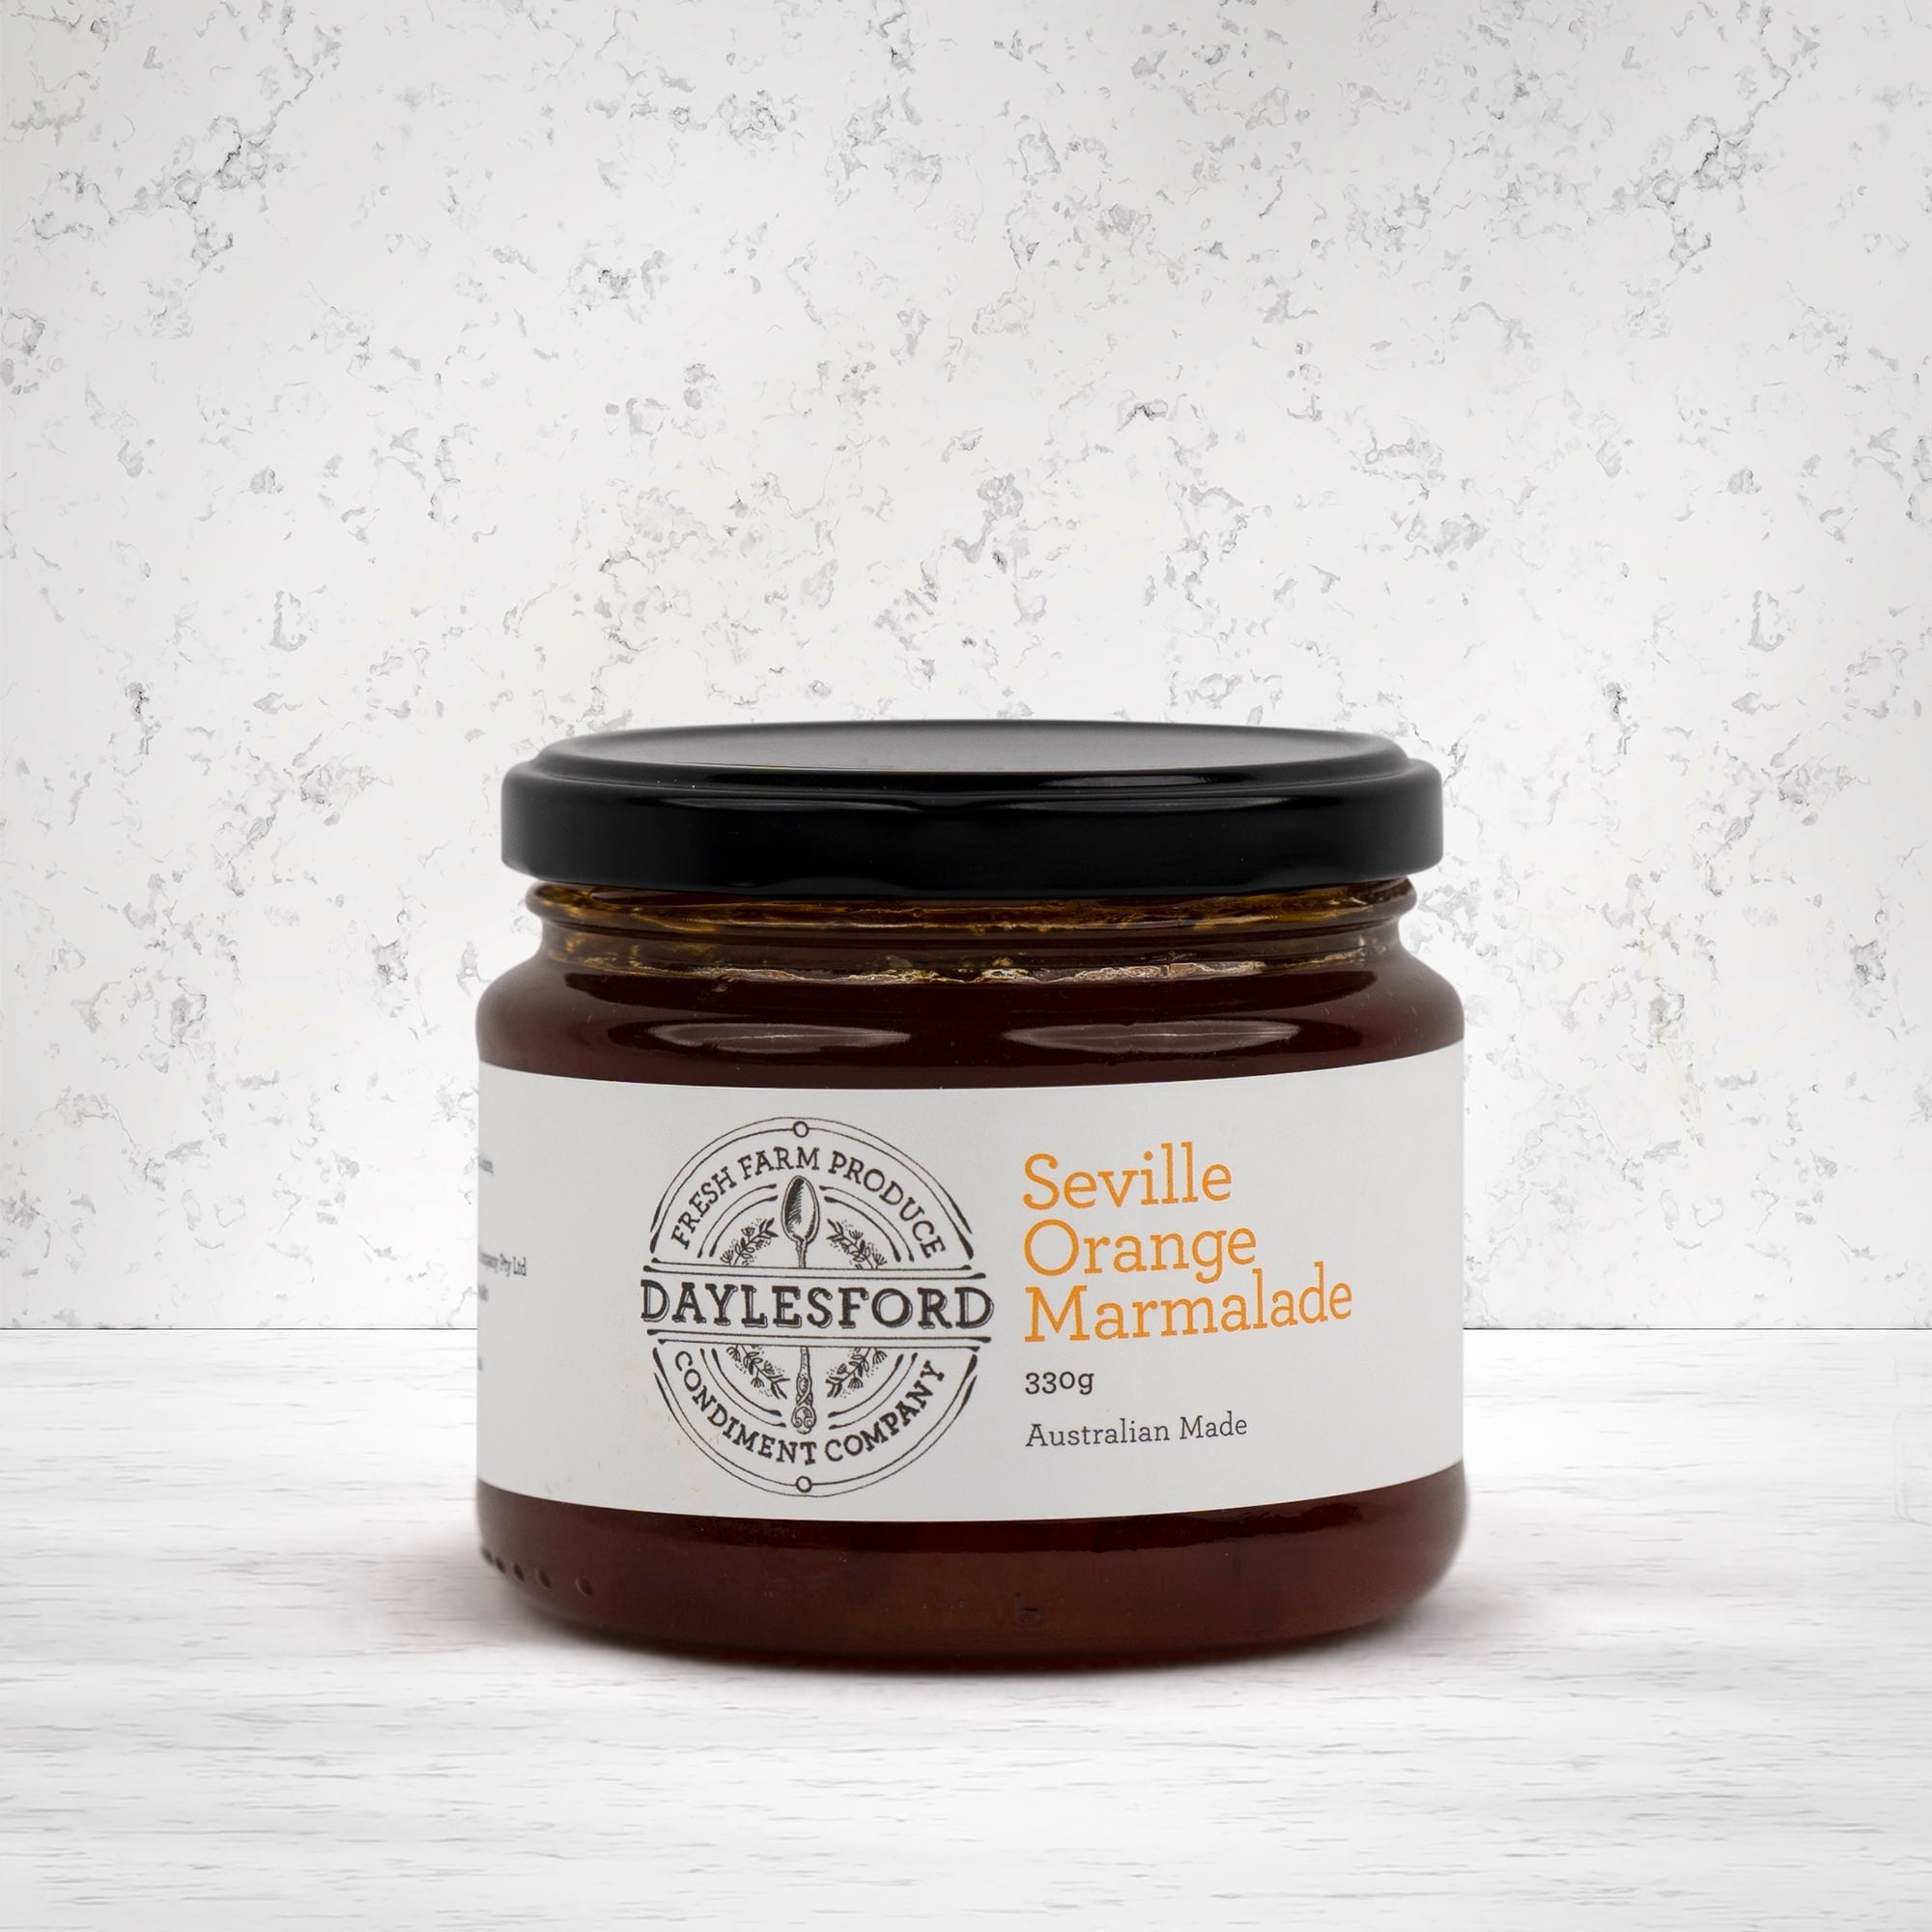 Daylesford Condiment Company Seville Orange Marmalade 330 grams - The Hamper Boutique Co